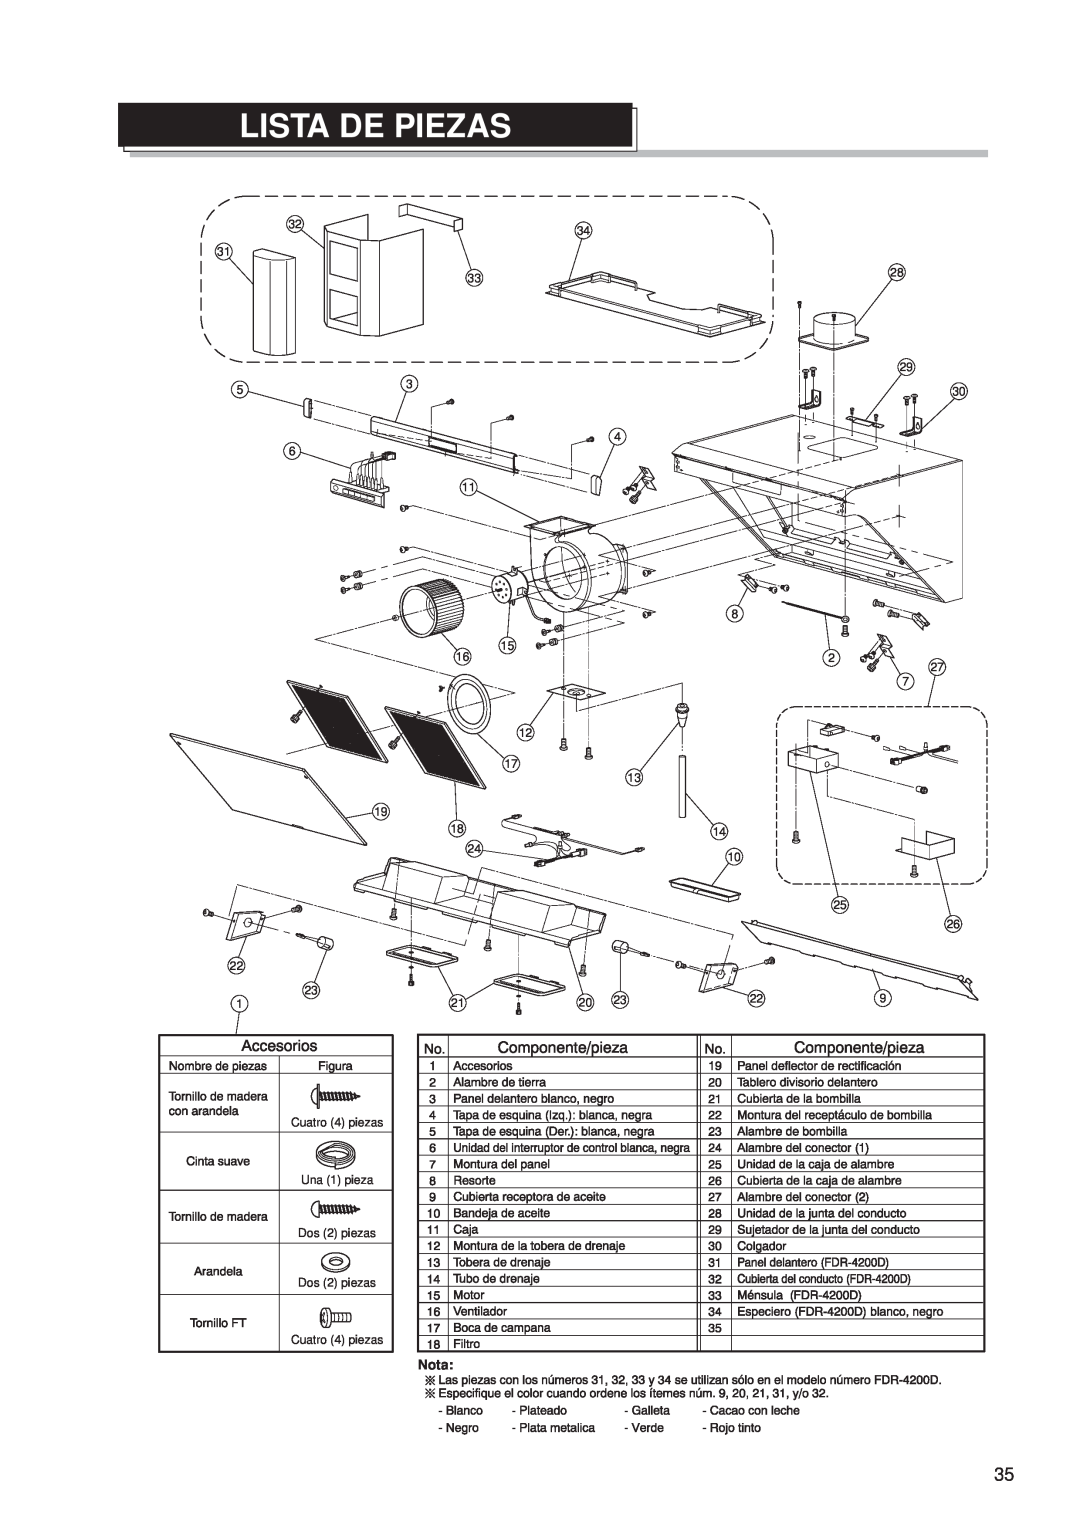 Fujioh FDR-4200D operation manual Lista De Piezas, Nota 